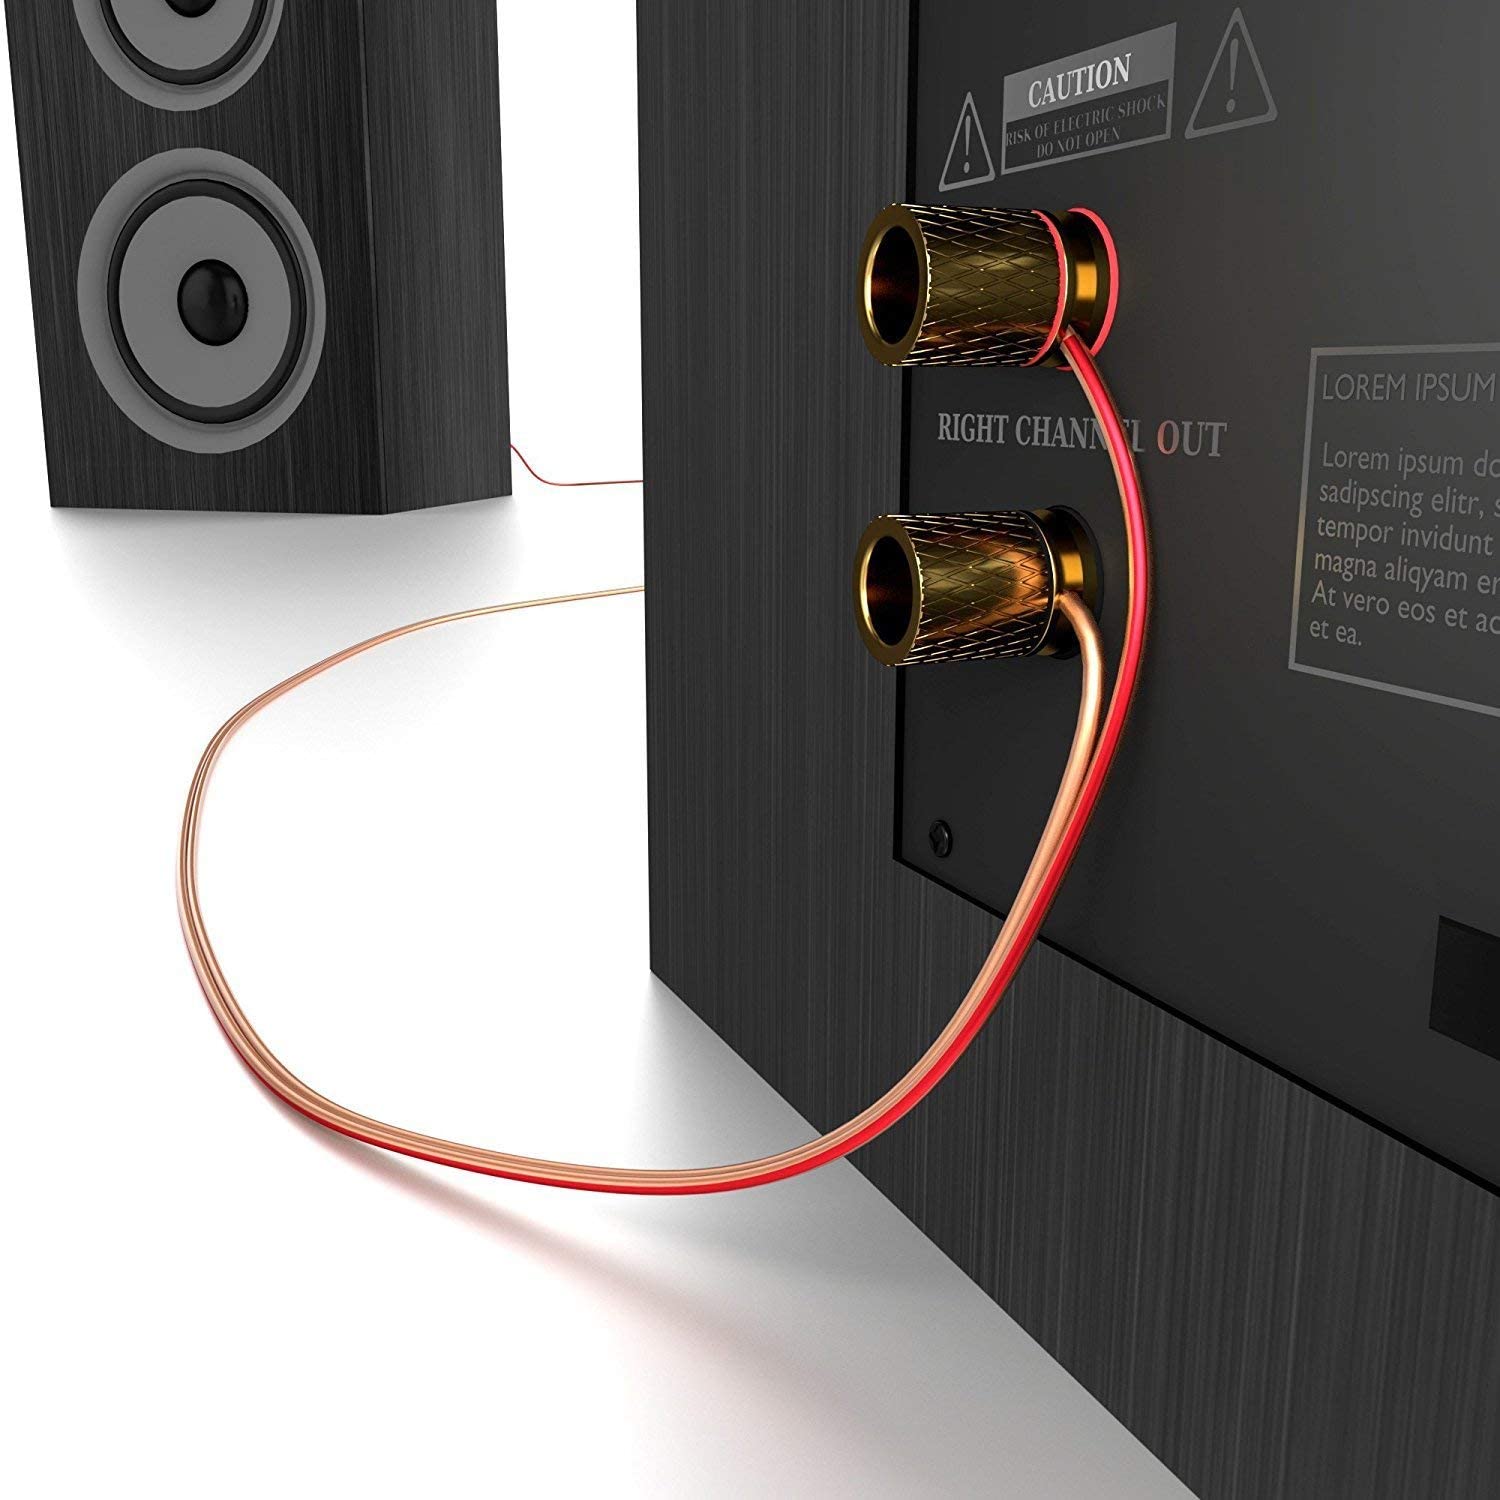 Lautsprecherkabel aus reinem Kupfer - Made in Germany » KabelDirekt